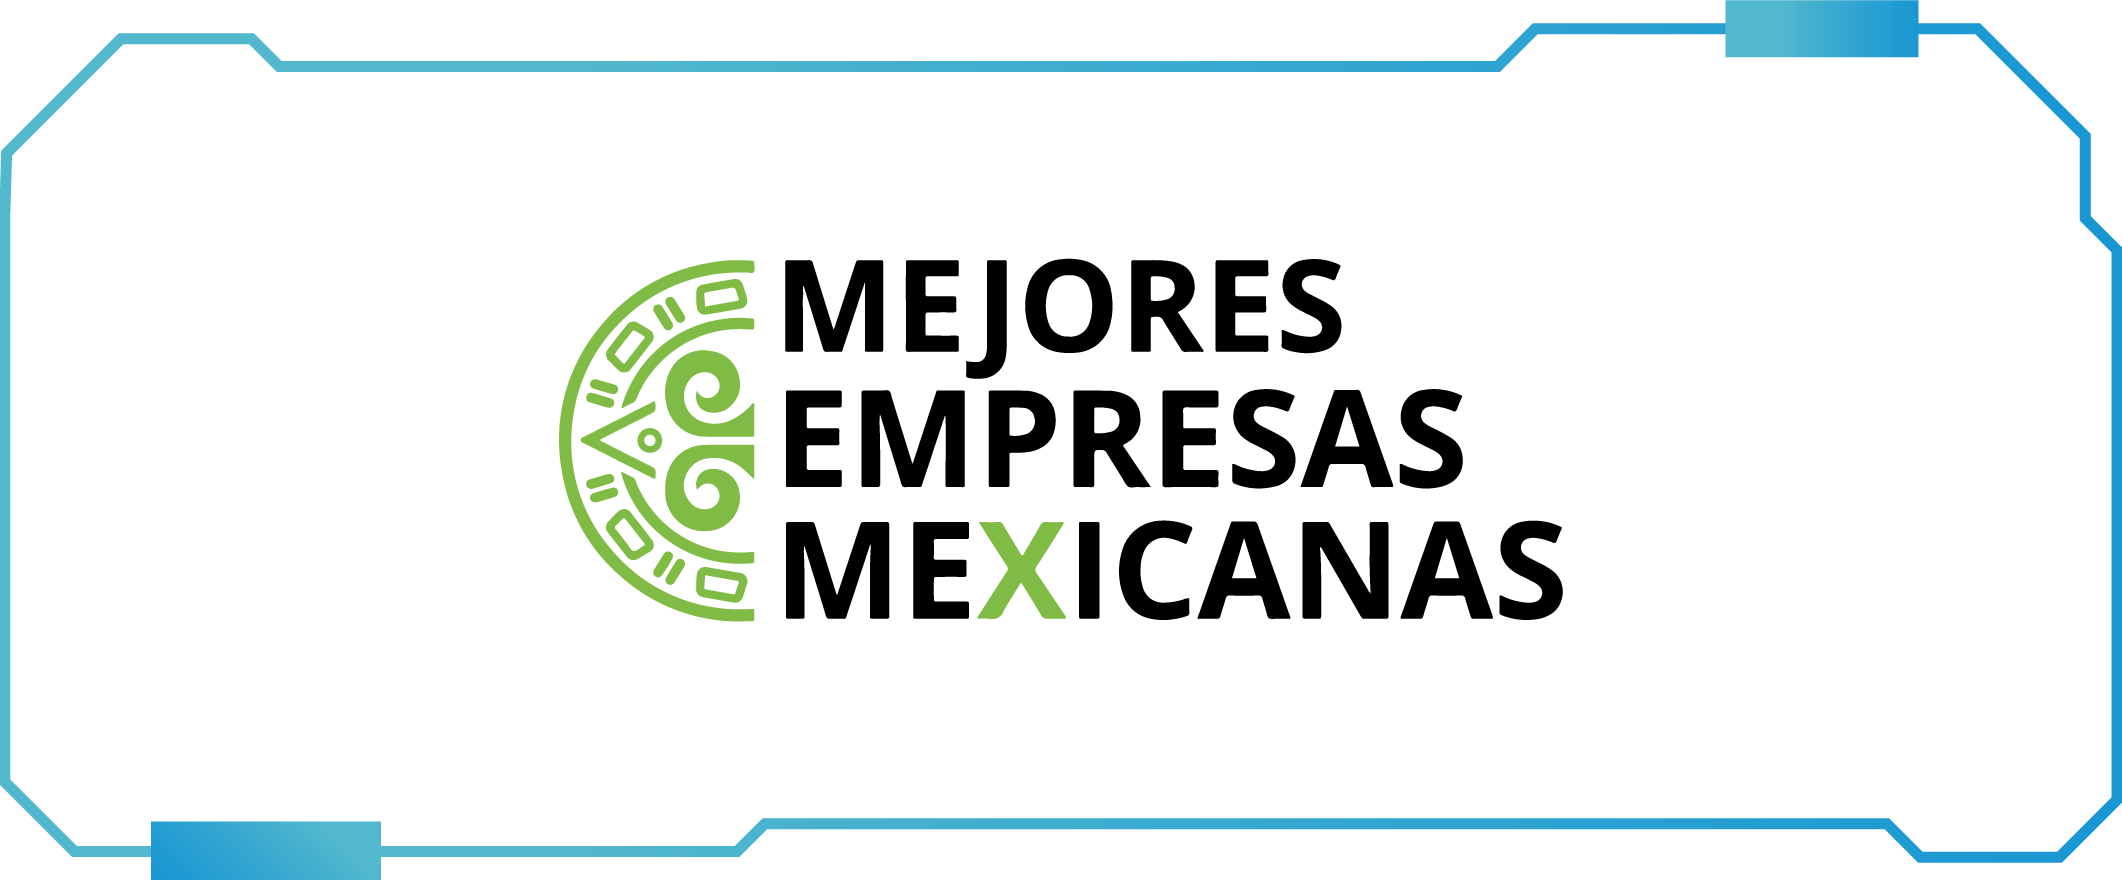 Mejores empresas mexicanas